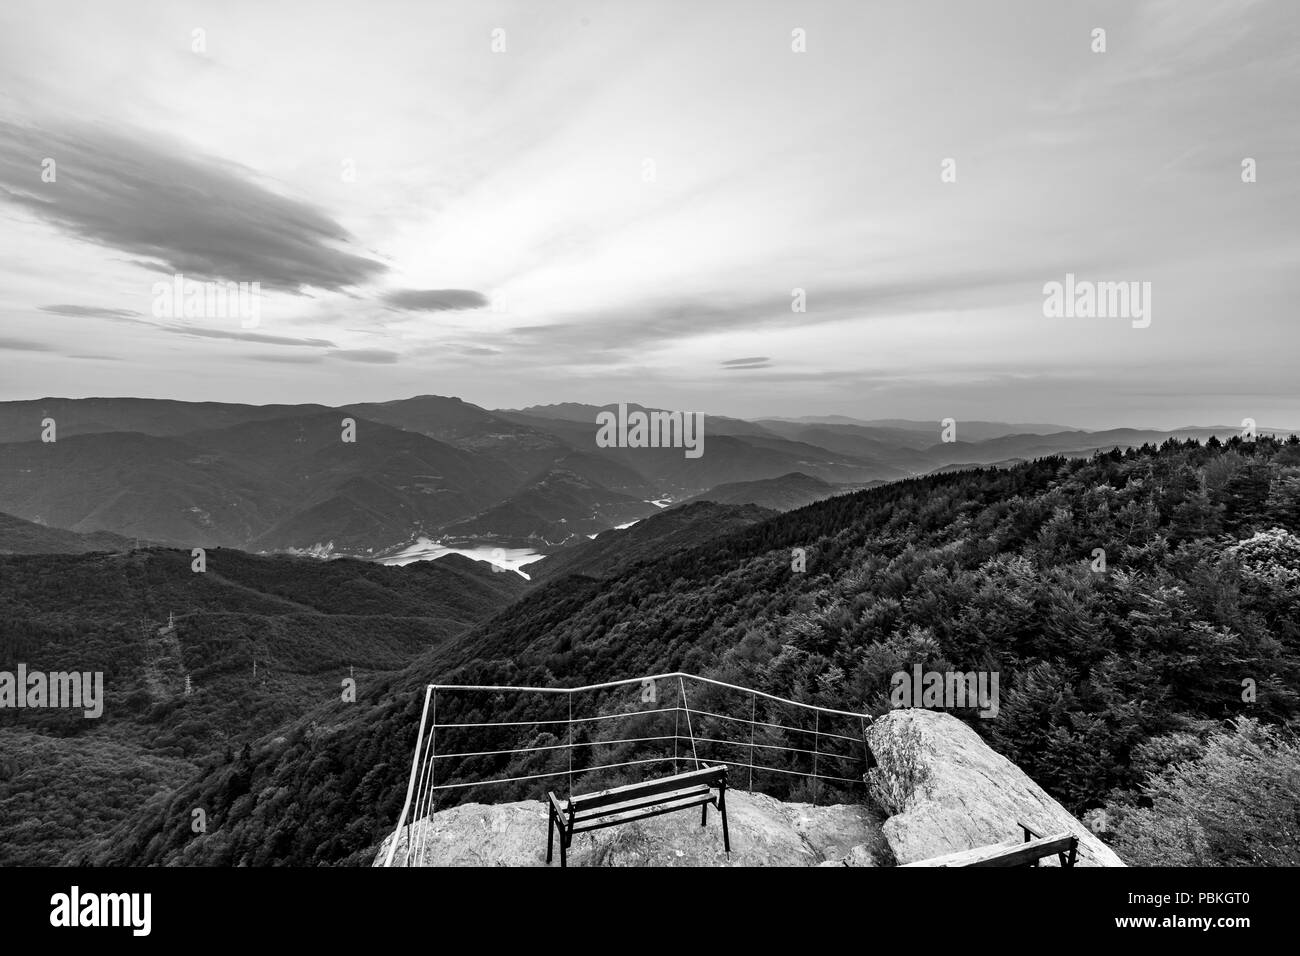 Printemps paysage calme paysage noir et blanc, pont d'observation à haute altitude avec vue sur les rochers pittoresques et banc de bois Rhodopes nea Banque D'Images